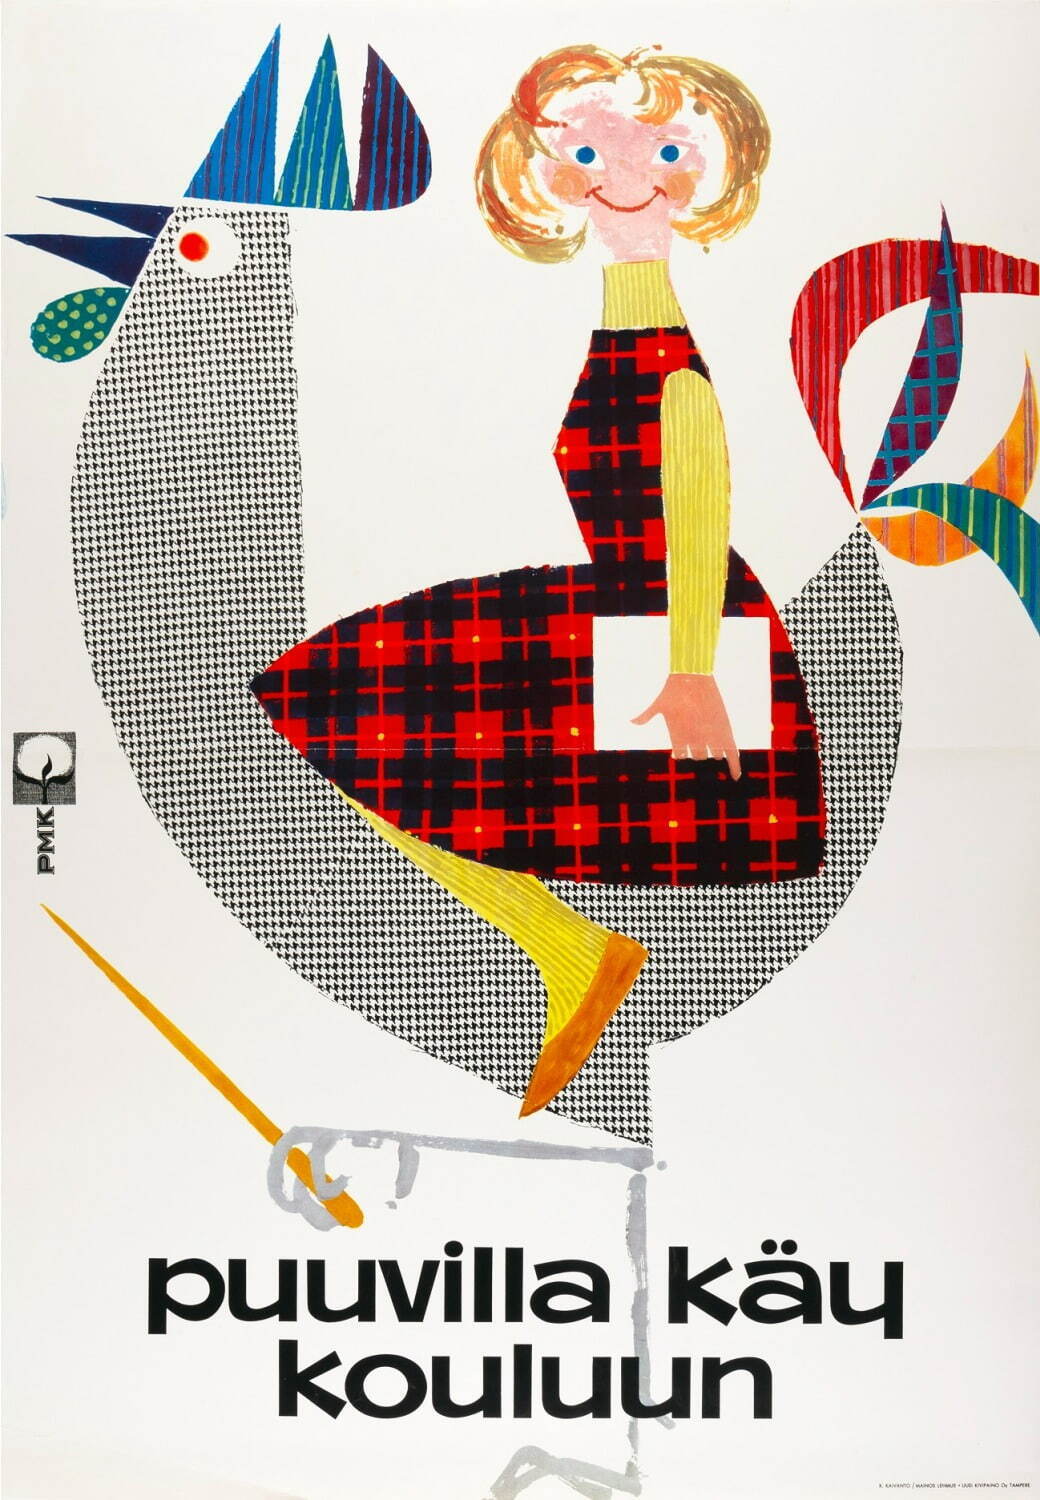 キンモ・カイヴァント作「コットンを着て学校に行こう」ポスター(1962年)
タンペレ歴史博物館所蔵